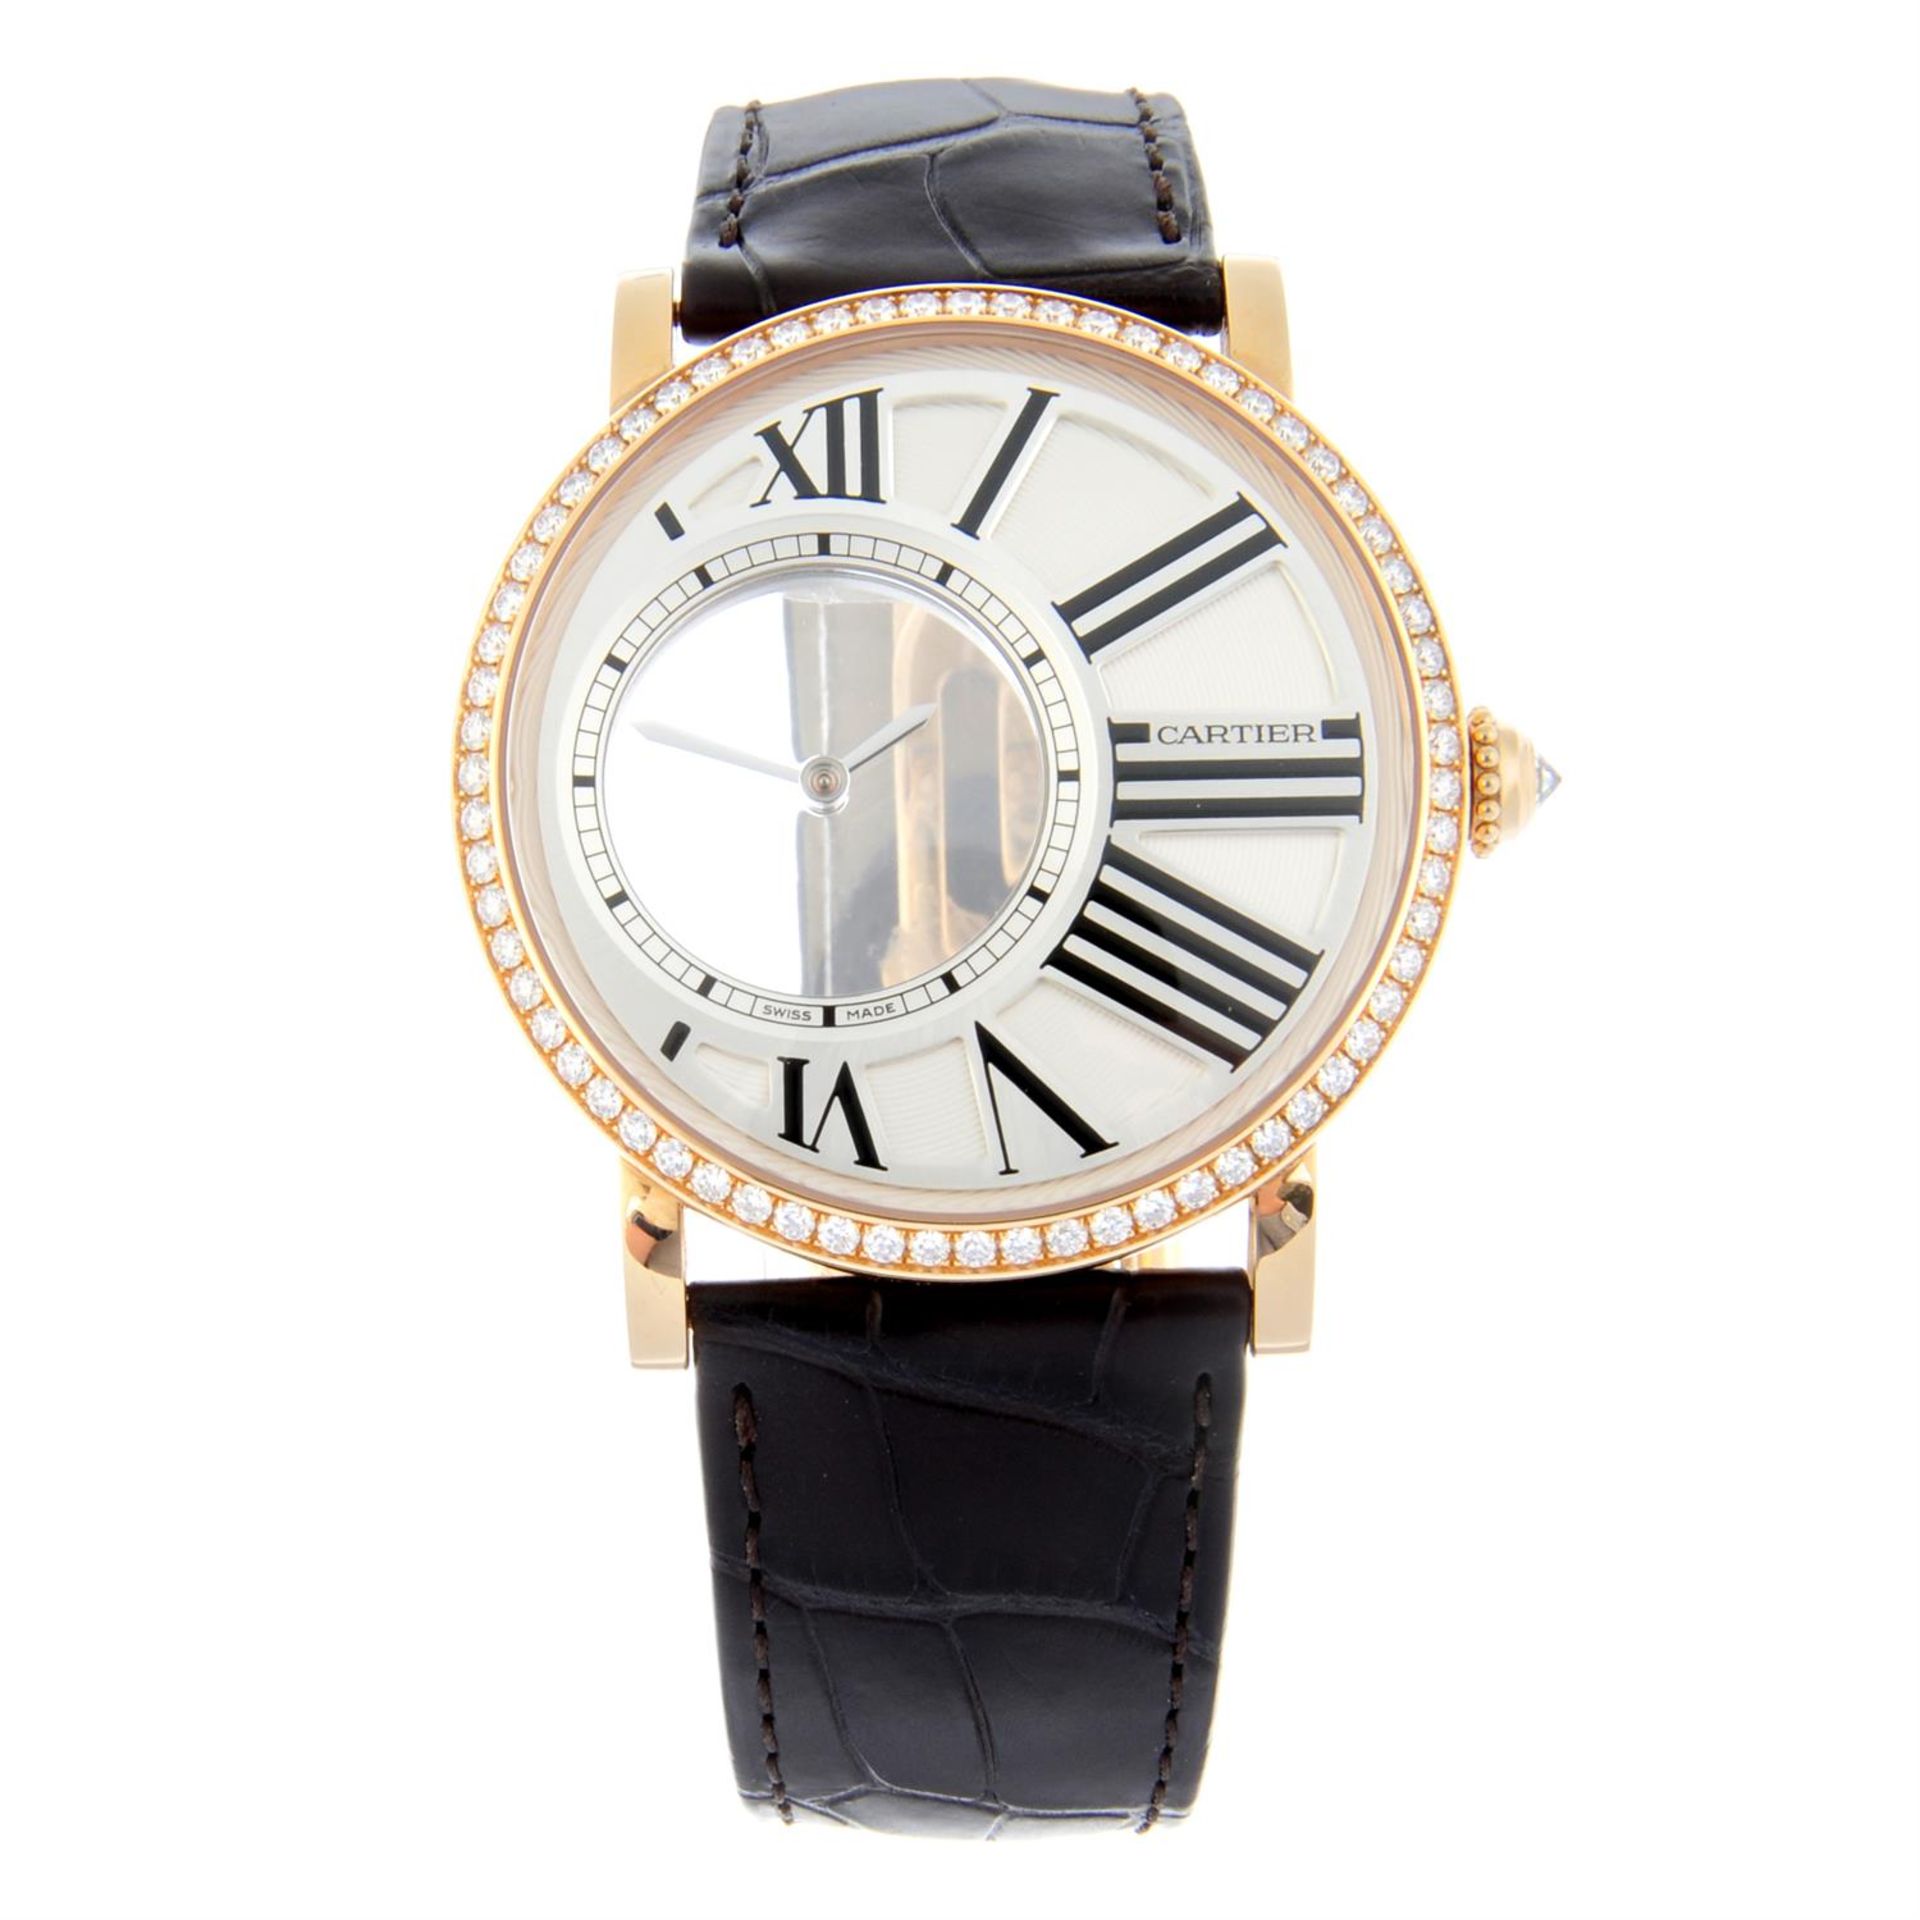 CARTIER - an 18ct rose gold Rotonde de Cartier Mystérieuse wrist watch, 42mm.